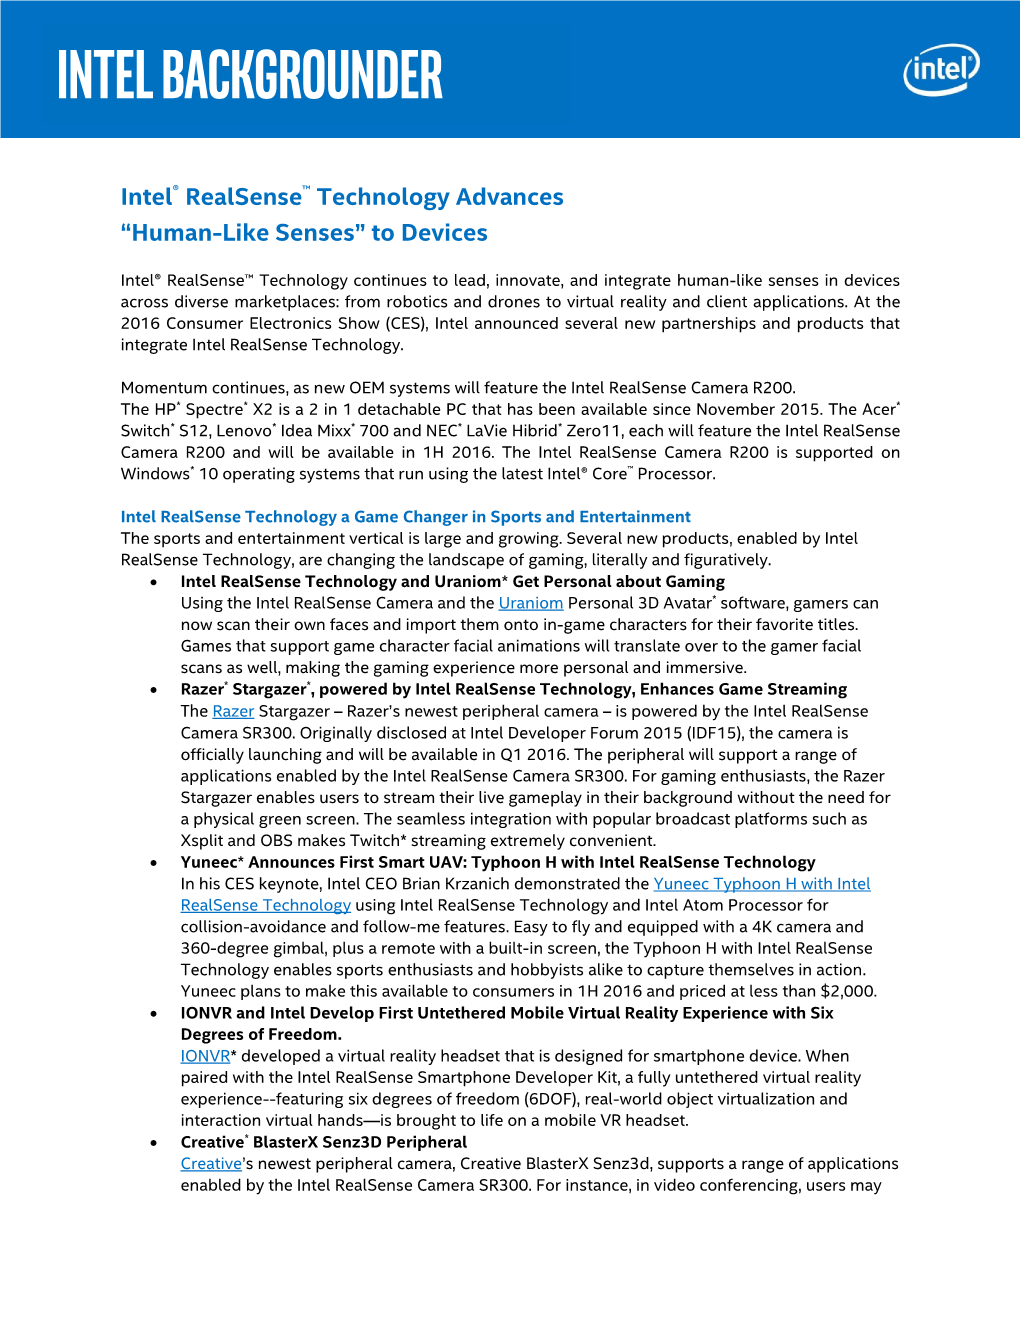 Intel® Realsense™ Technology Brings "Human-Like Senses" To